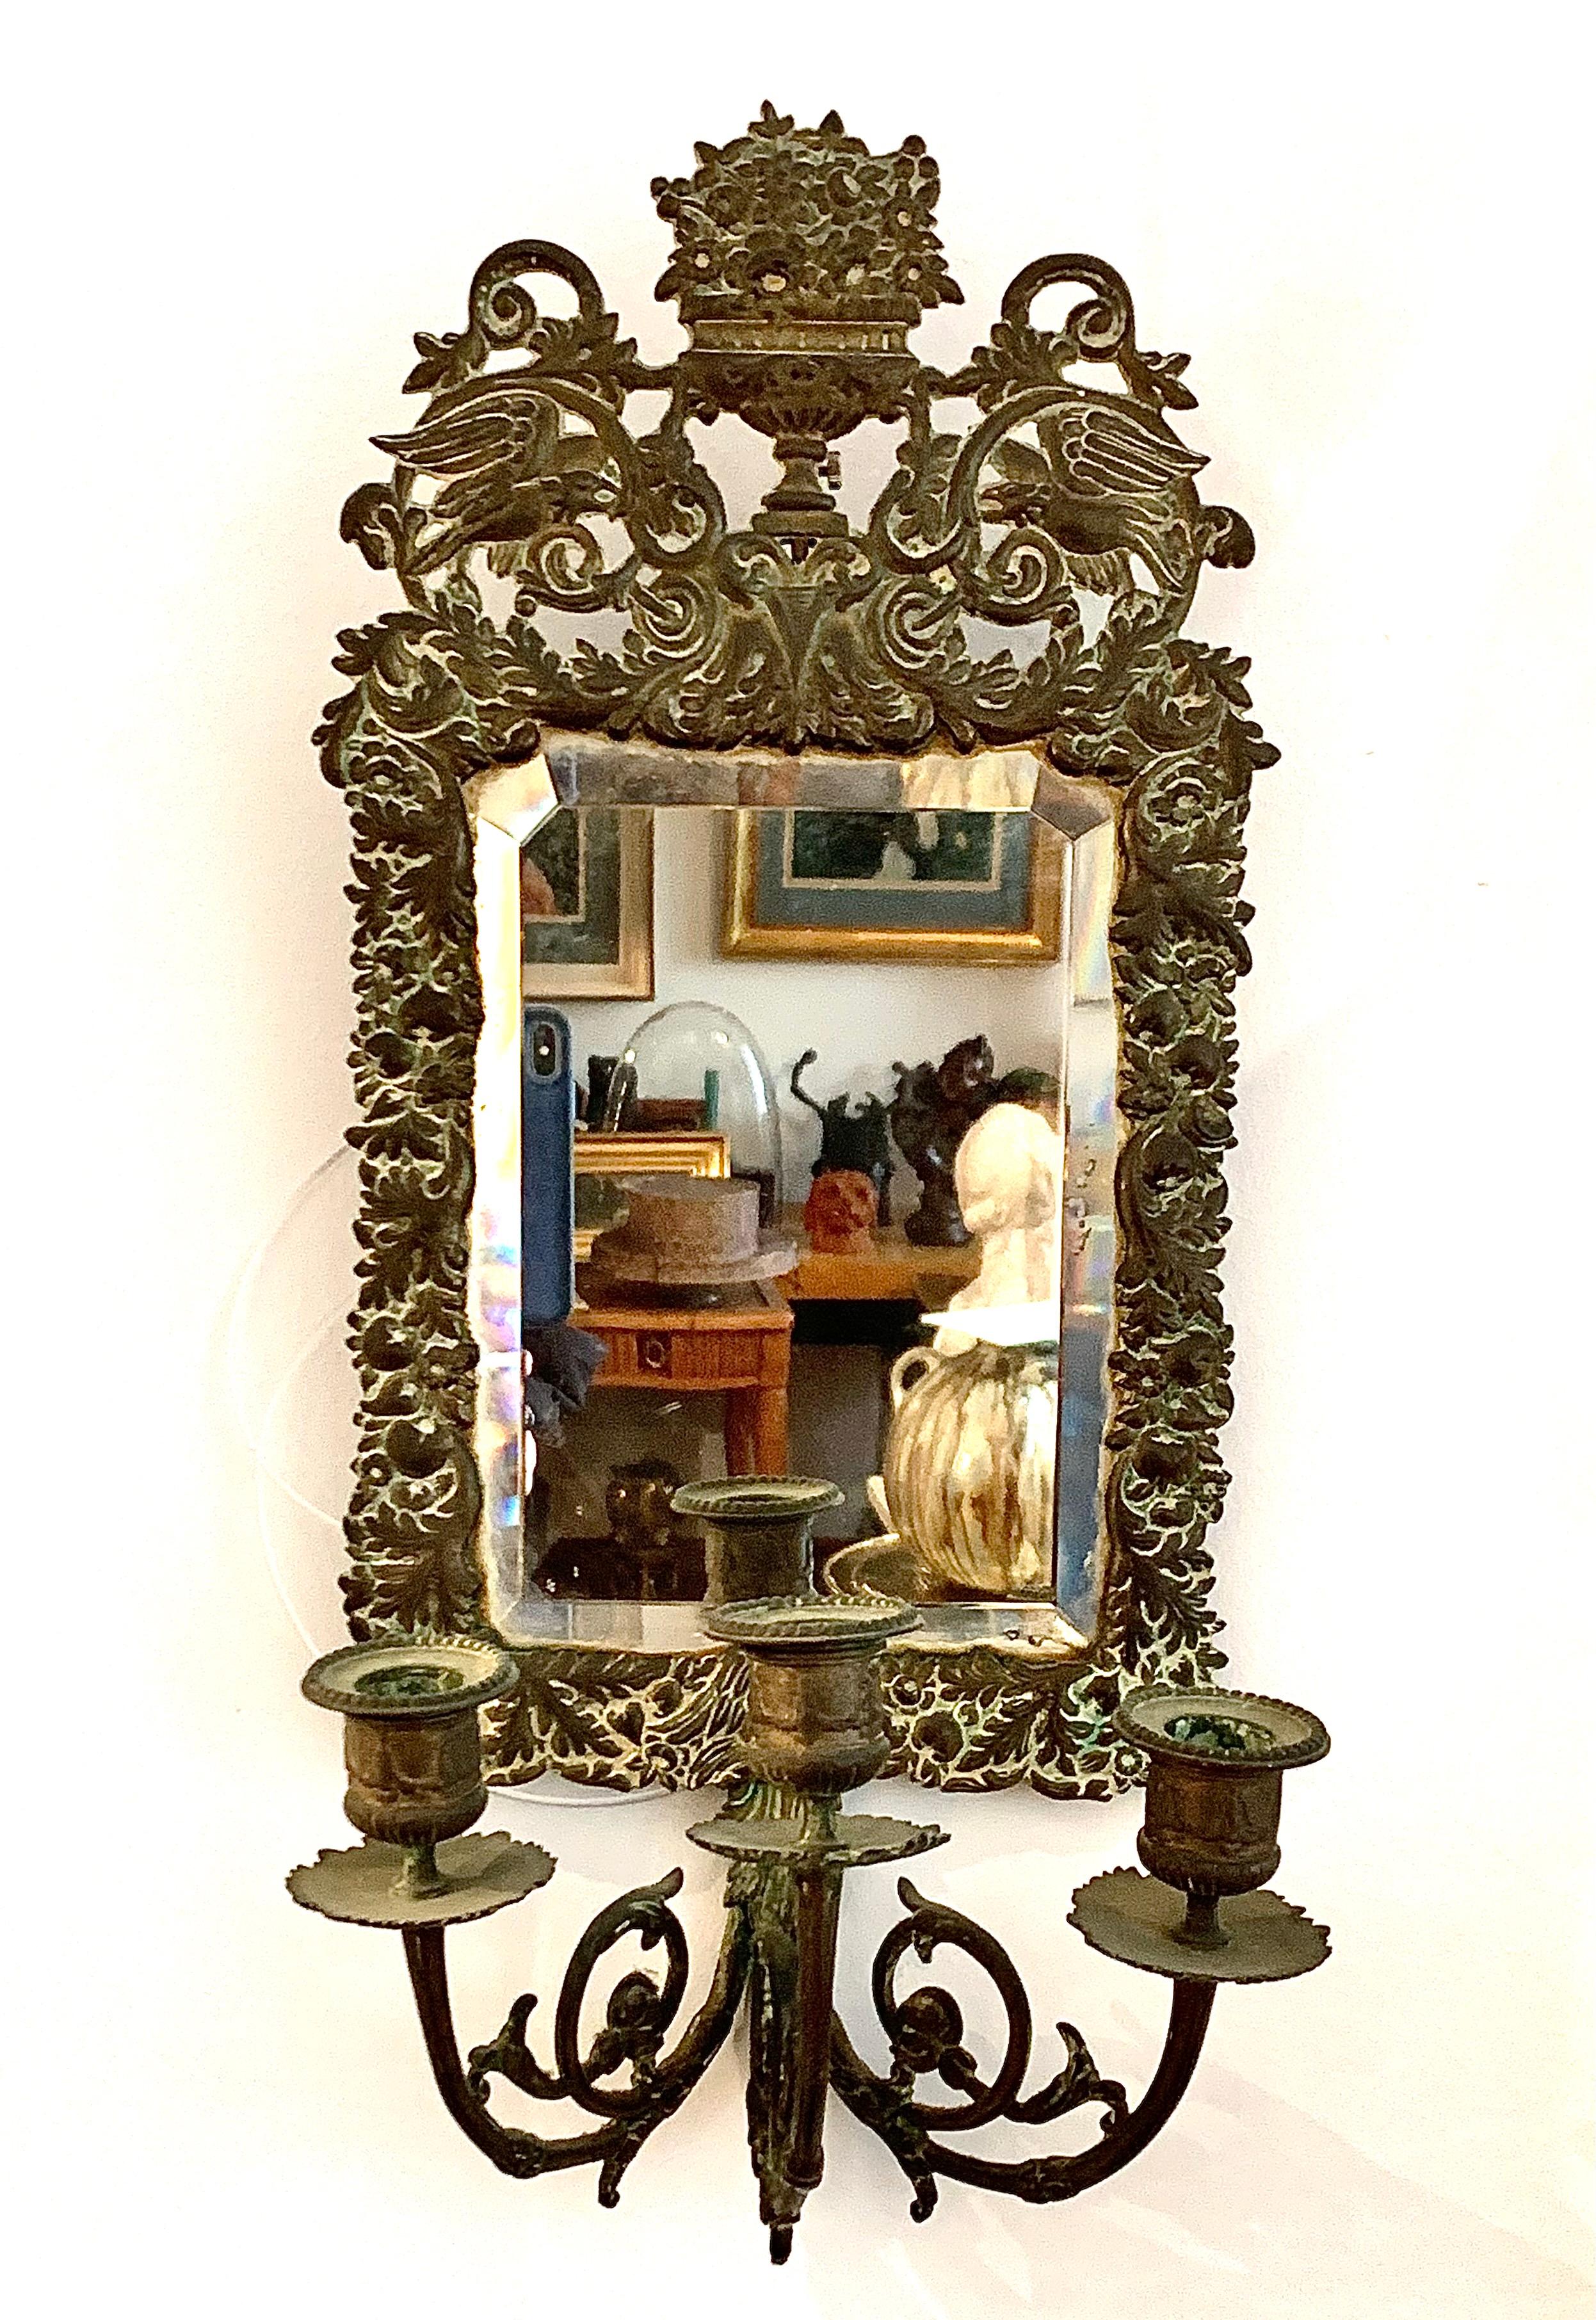 Louis XVI Antique 18th Century Double Eagle Wall Mirrors Candle Sconces Repoussé Brass For Sale